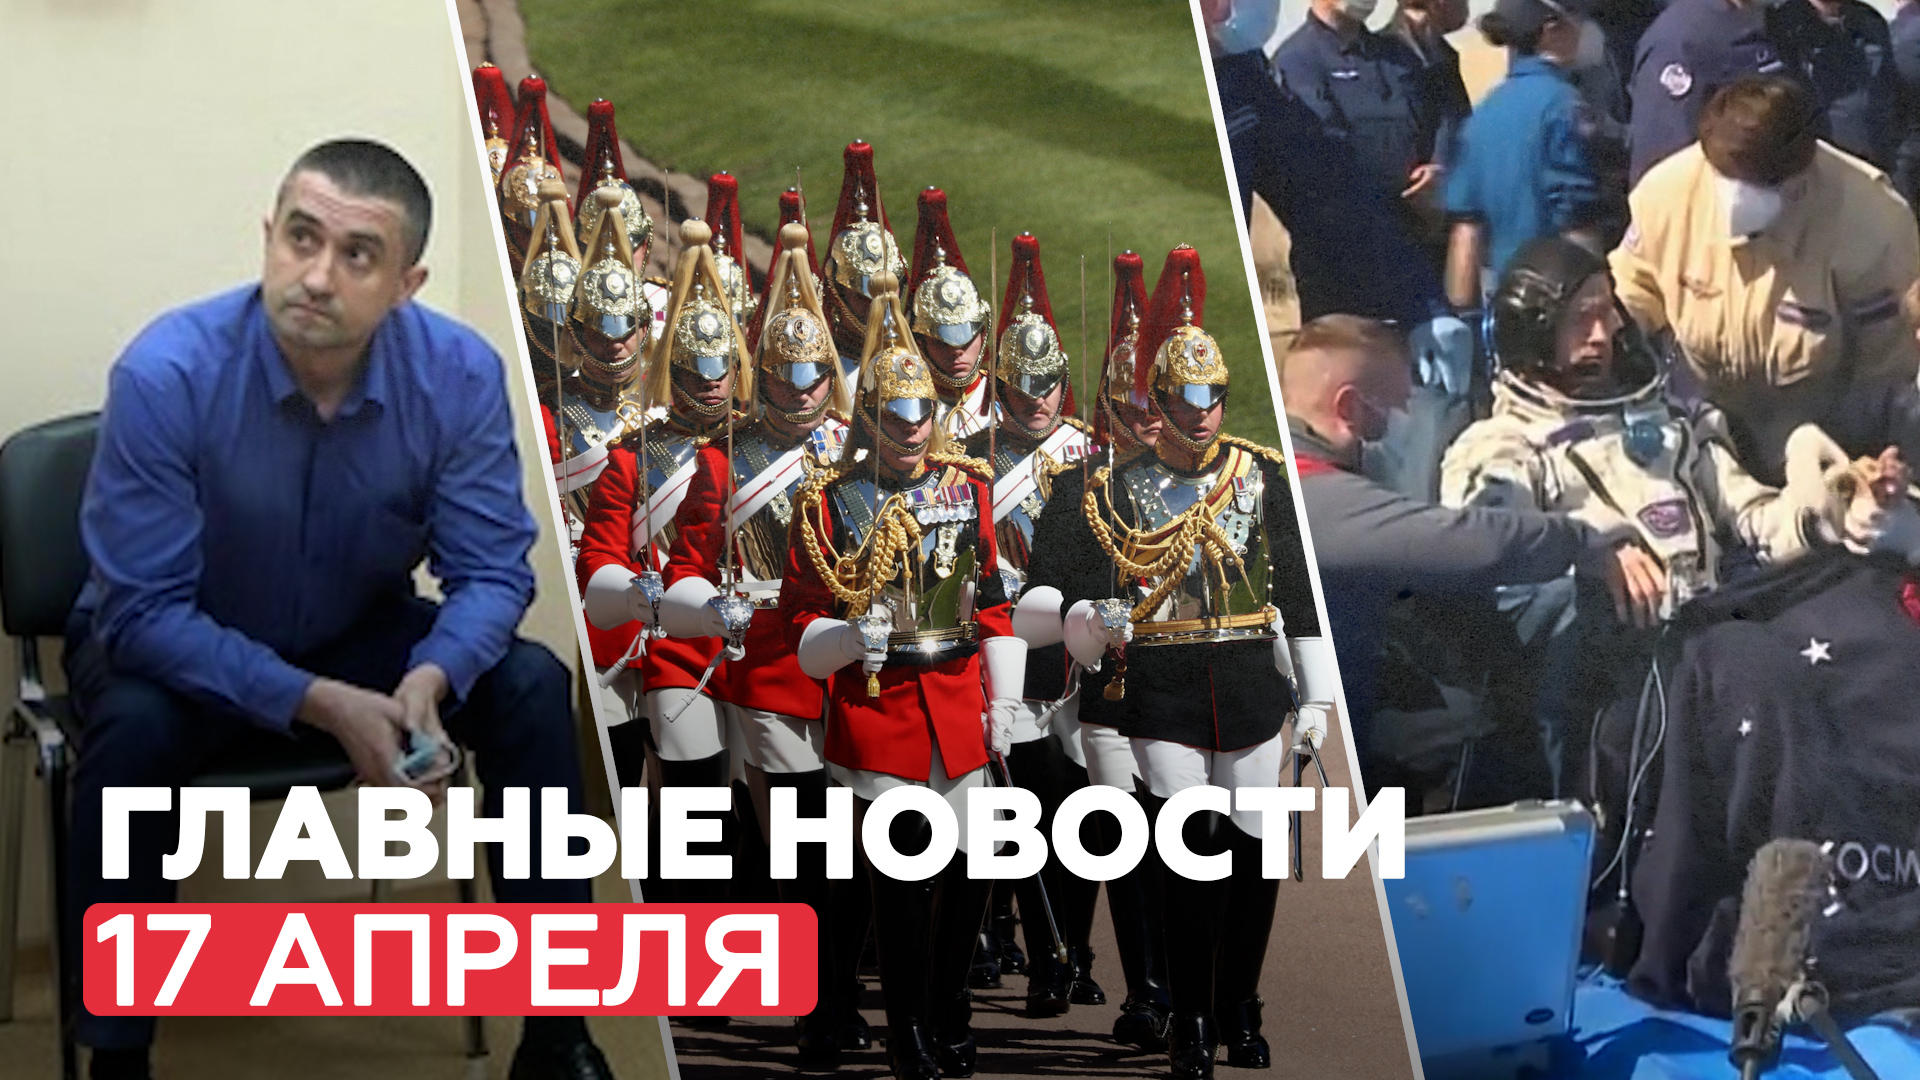 Новости дня — 17 апреля: задержание консула Украины, похороны принца Филиппа,возвращение космонавтов